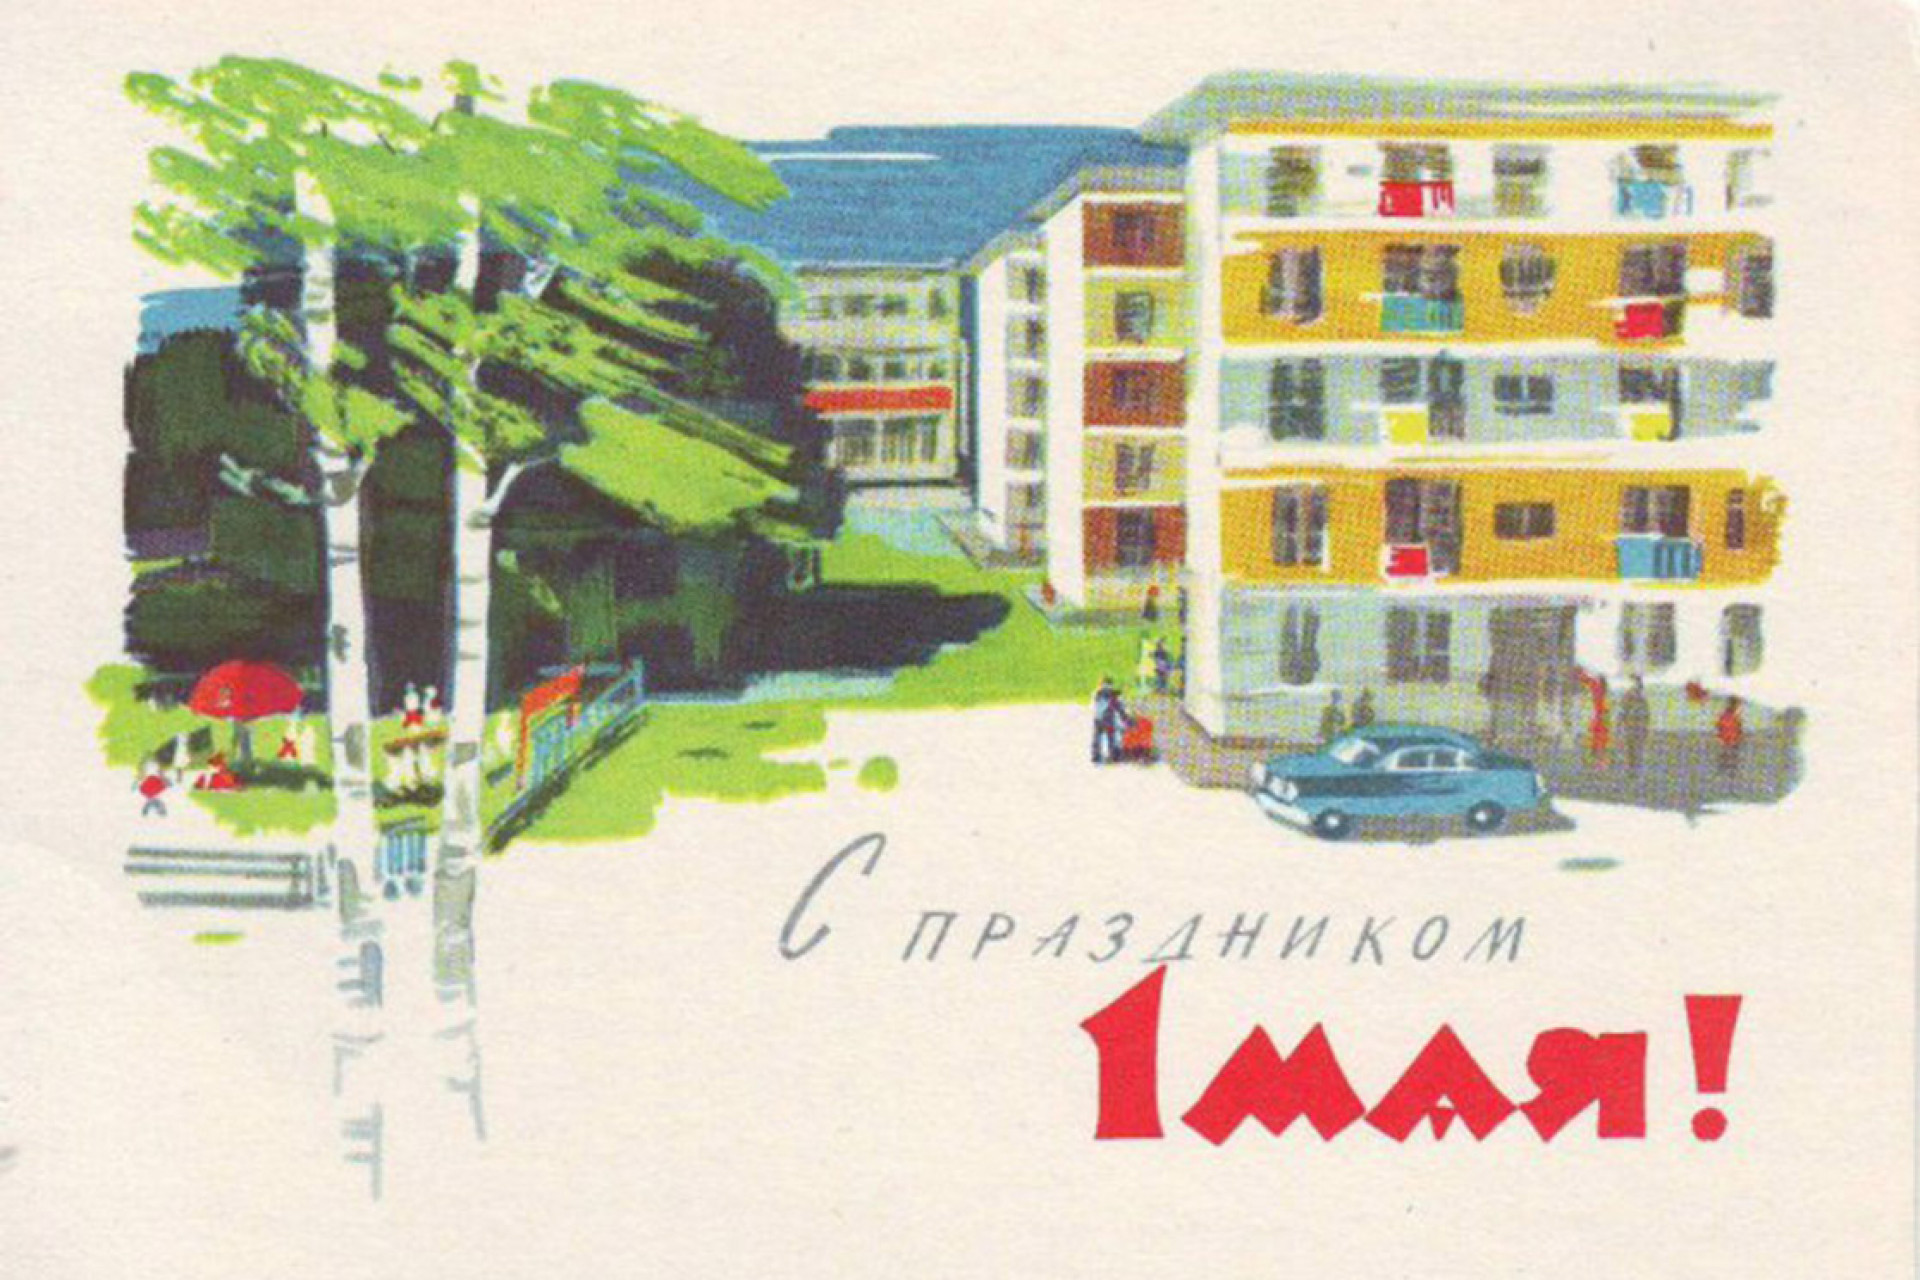 Funny DK3 NEW Postcard Novelty Humor Fun Soviet Leningrad by Night 